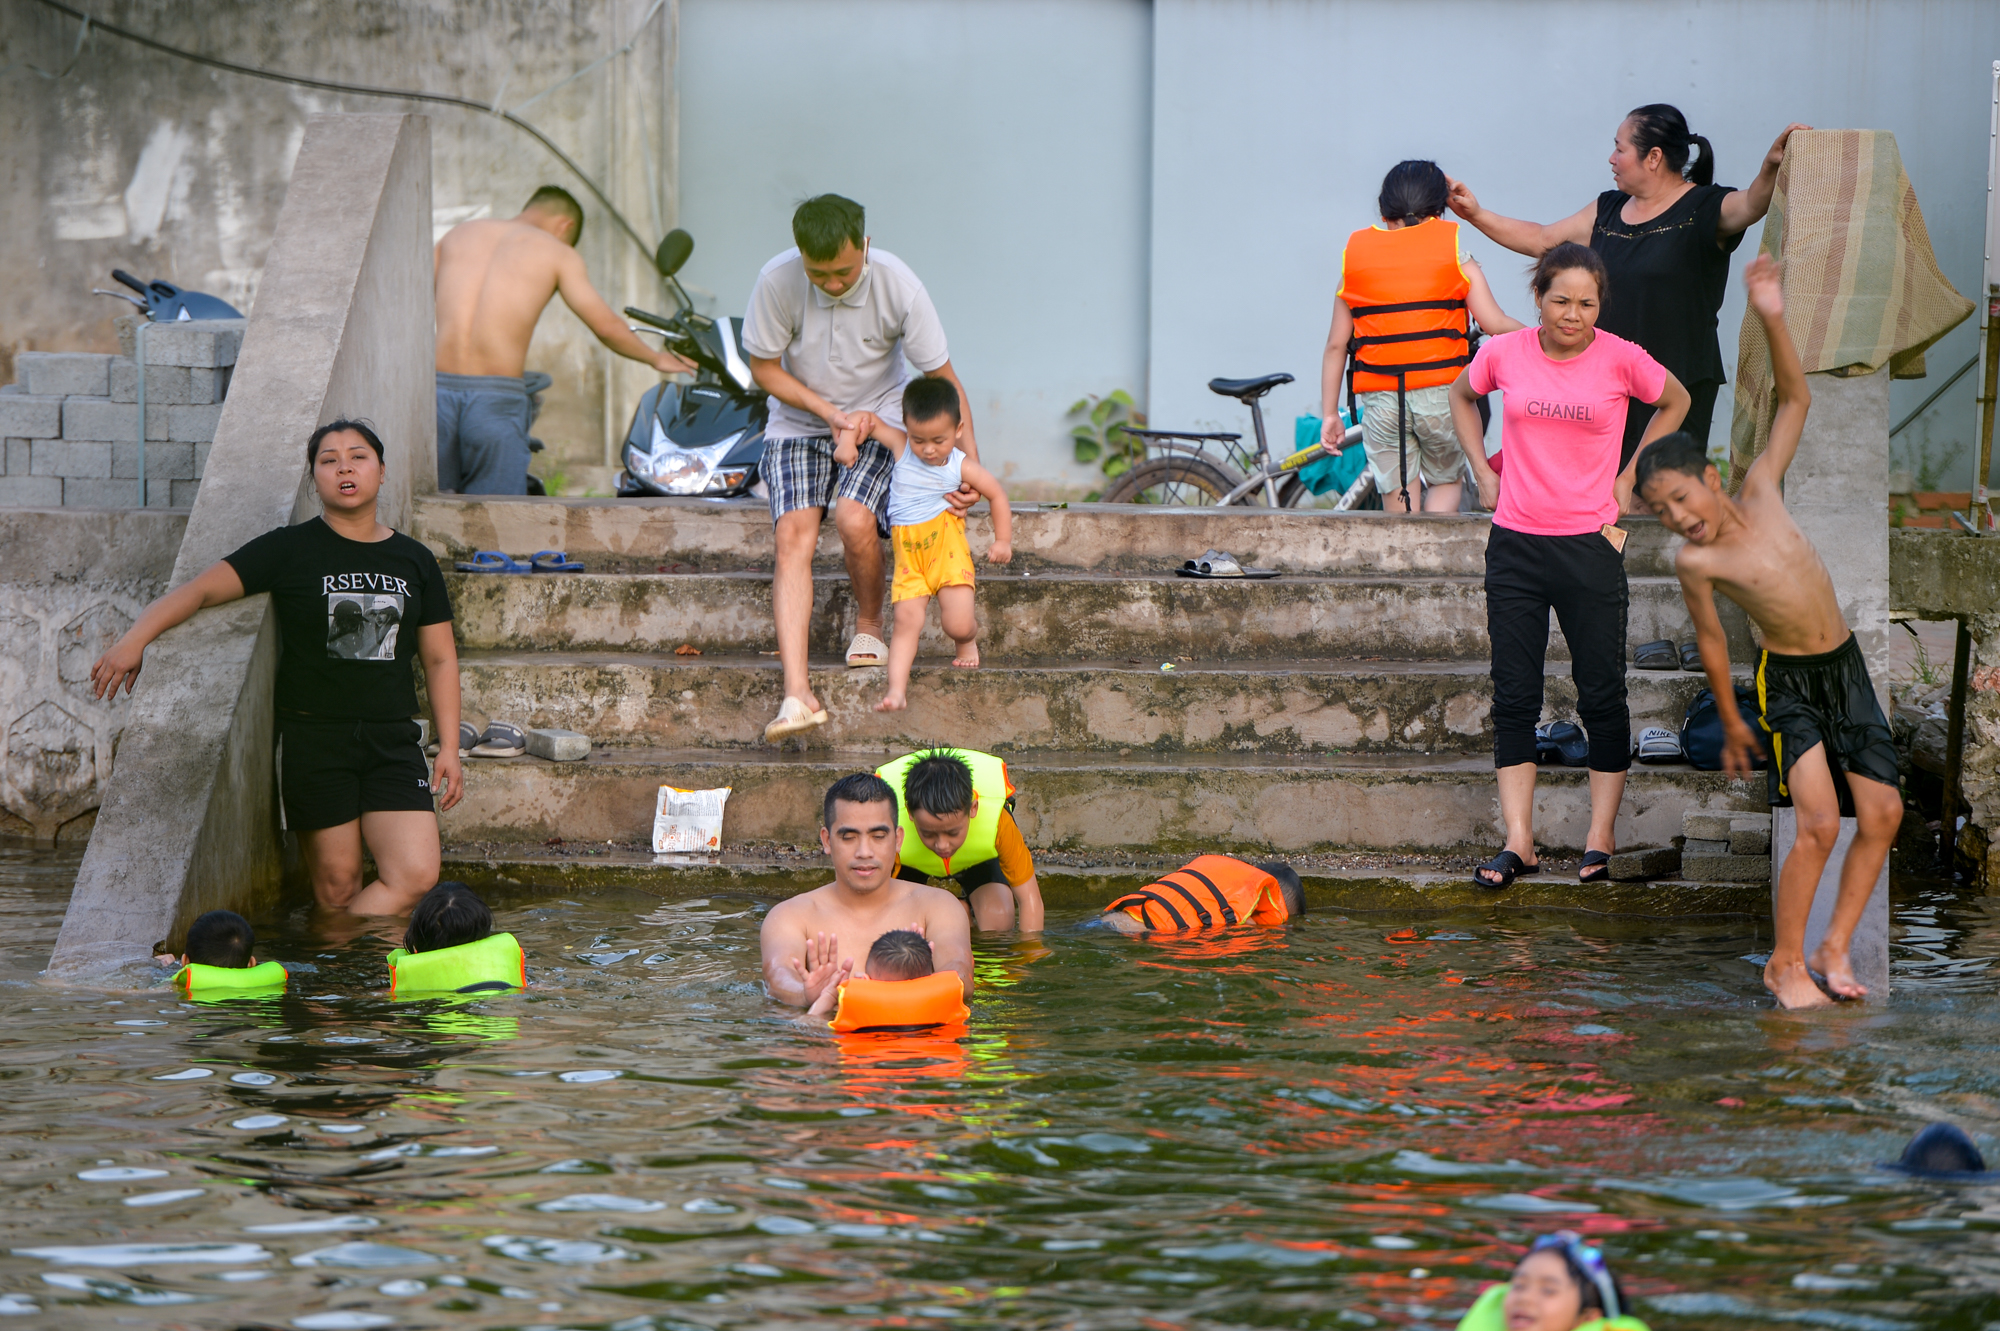  Hà Nội: Ao làng rộng 7.000 m2 được hô biến thành bể bơi, hàng trăm người nô nức tới chơi - Ảnh 6.